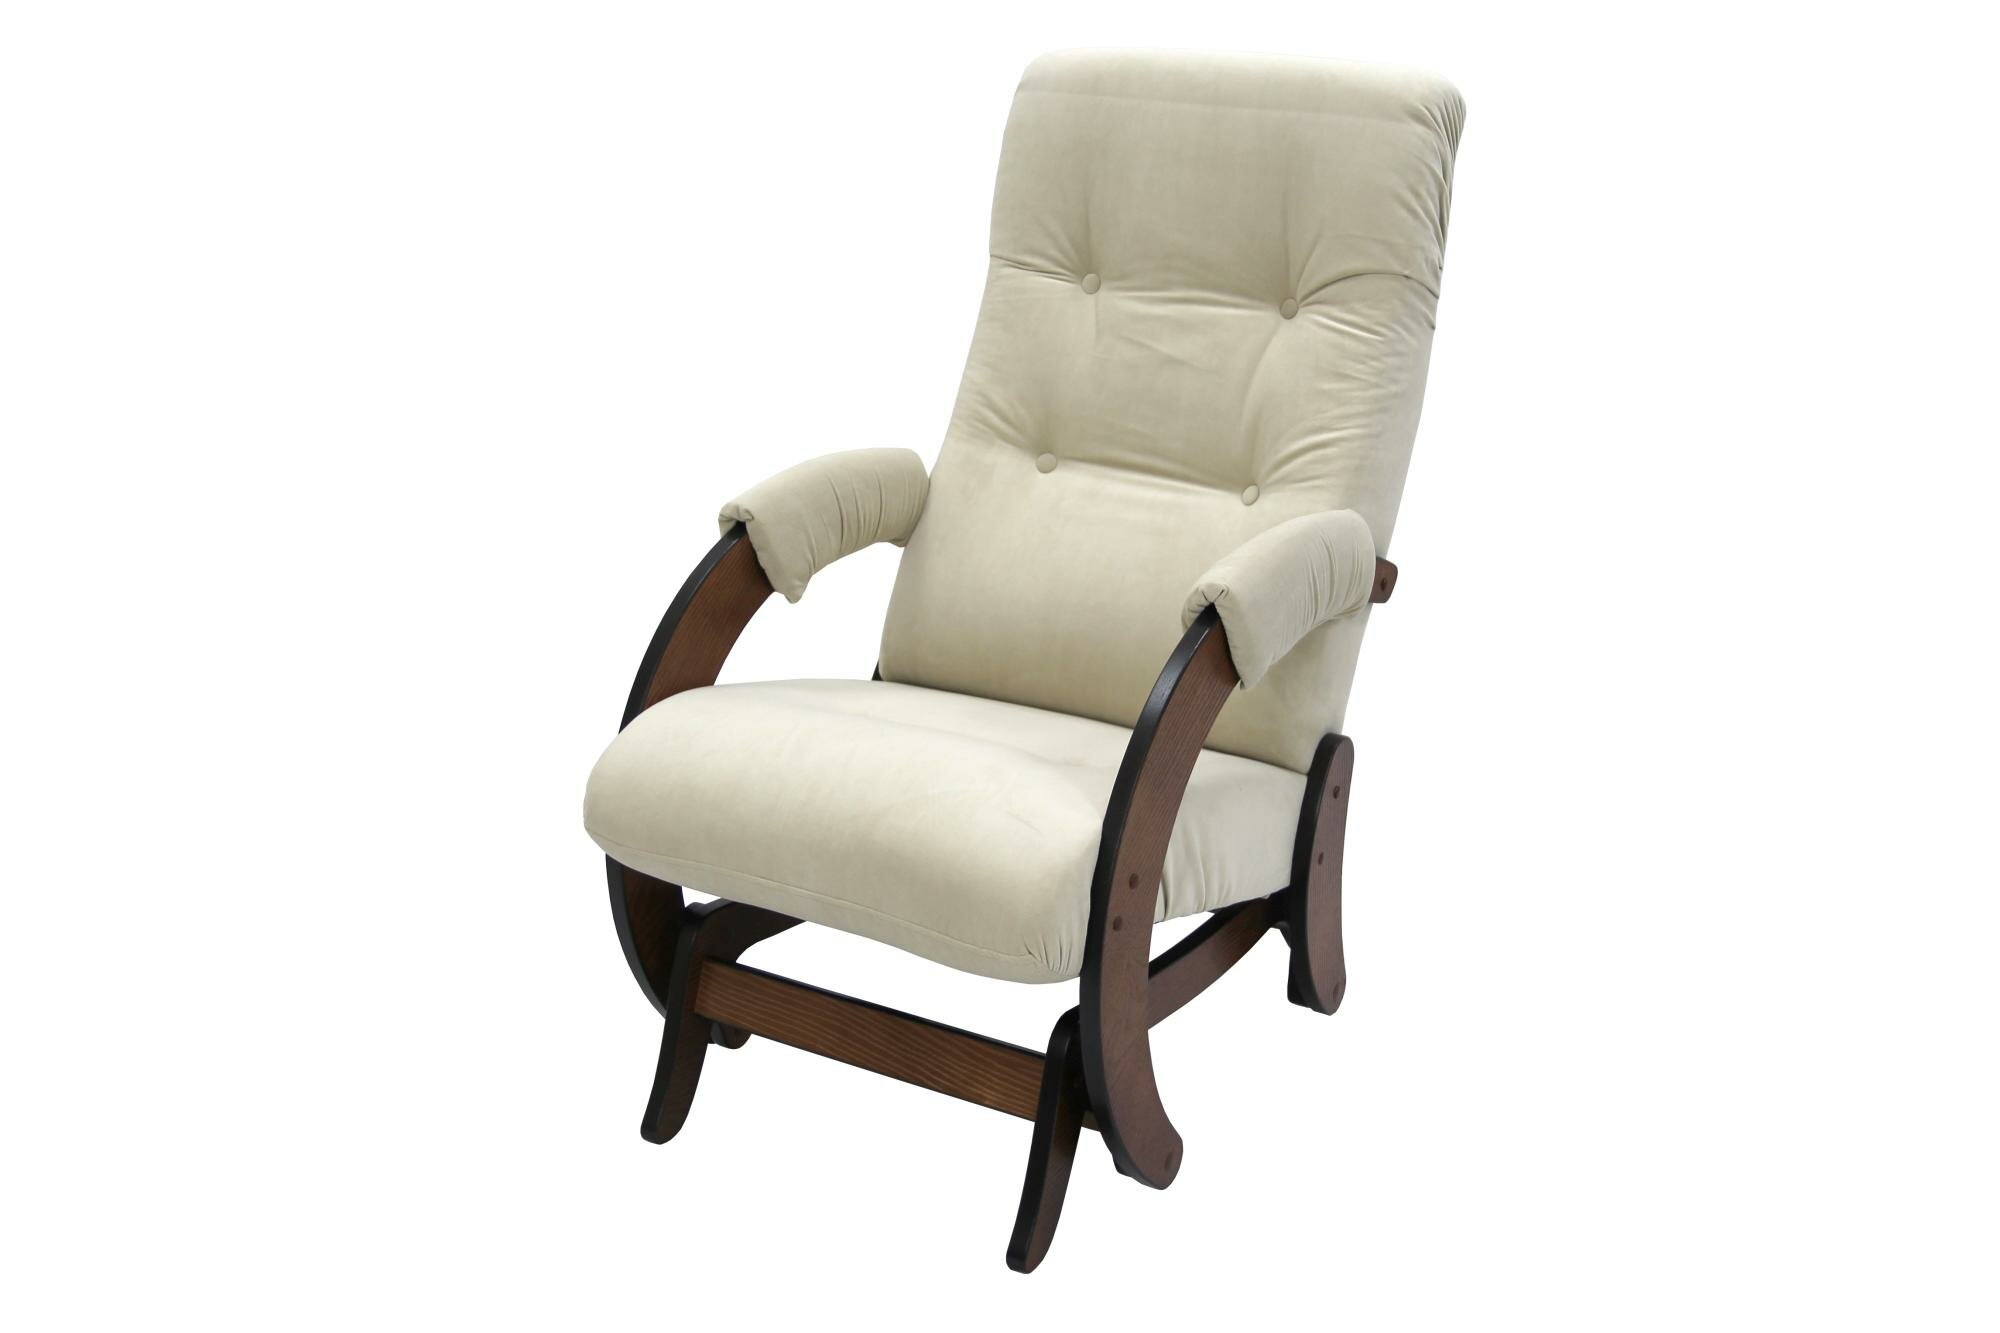 Кресло -Глайдер Мэтисон №68 арт. GS-1234 1 упаковка (каркас орех антик, сиденье беж Ultra Sand)